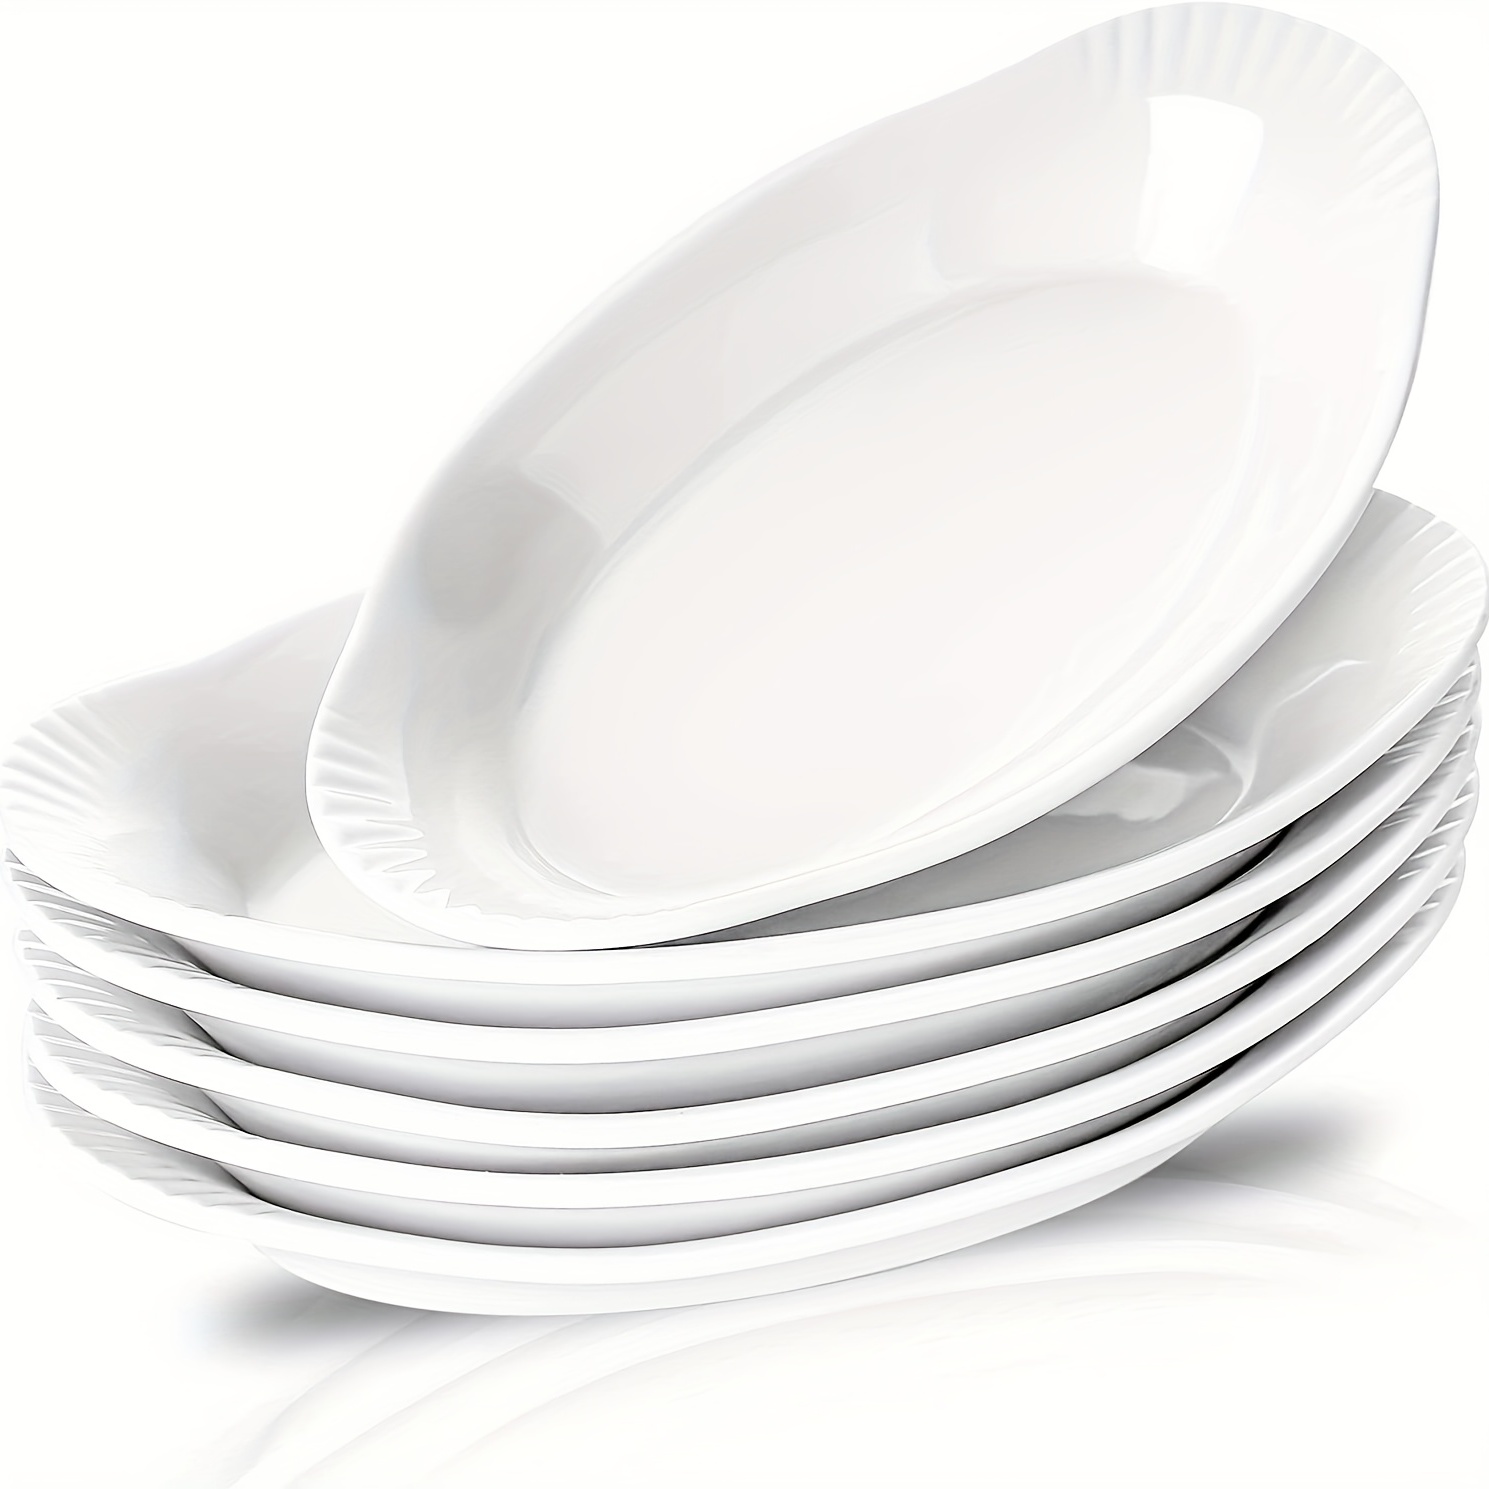  Ebros - Platos ovalados de porcelana blanca natural, diseño  moderno, contemporáneo, elegante, platos ovalados de porcelana blanca  natural, suministros de restaurante, aptos para lavavajillas y microondas  (3, 16 pulgadas de largo) 